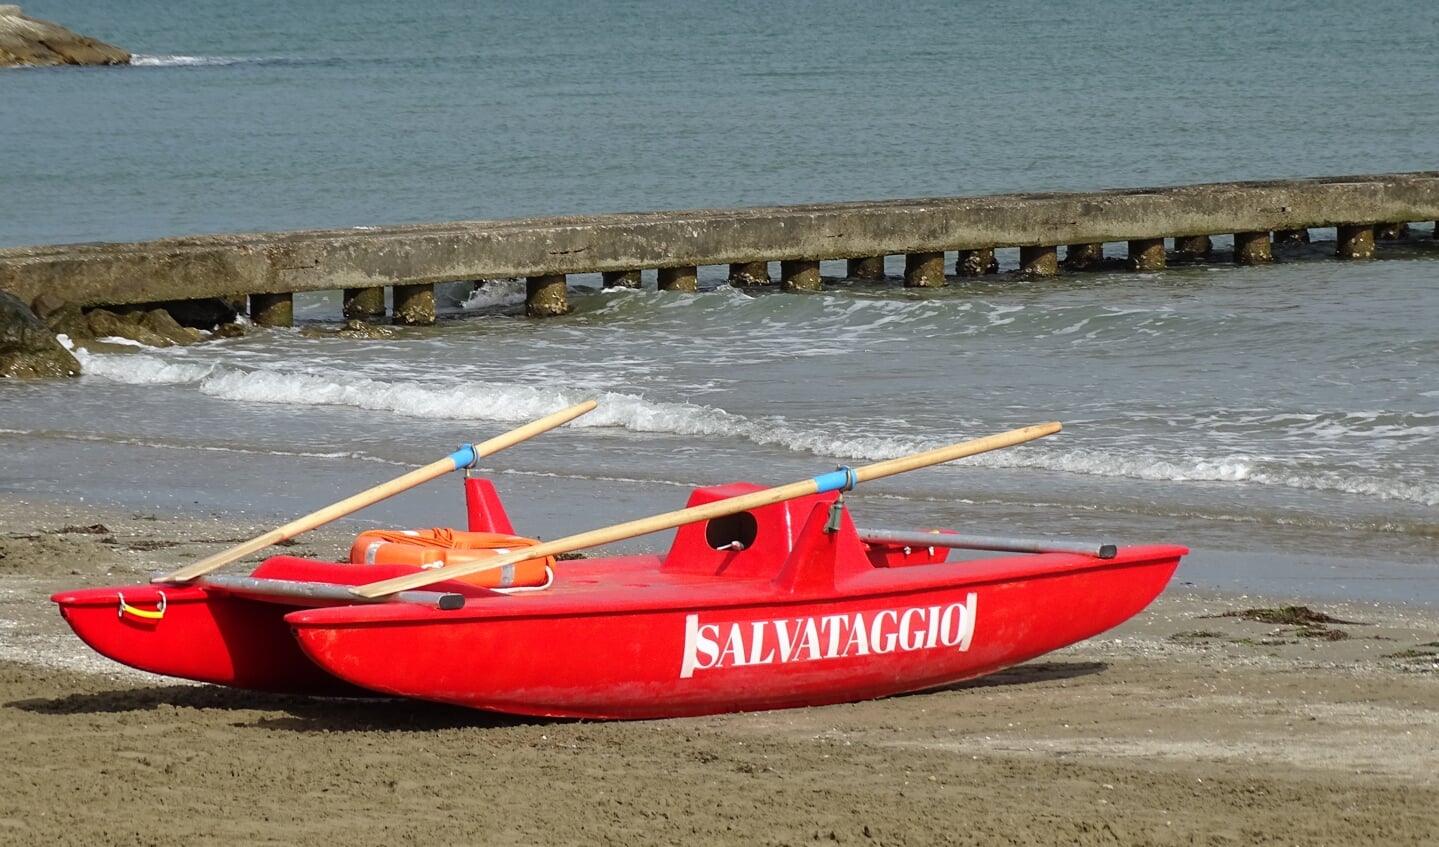 'Bijgaand mijn zomerfoto van het reddingsbootje van de 'Italiaanse baywatch' genomen op 16 juli op het strand van camping Pra' delle Torri in Caorle. 